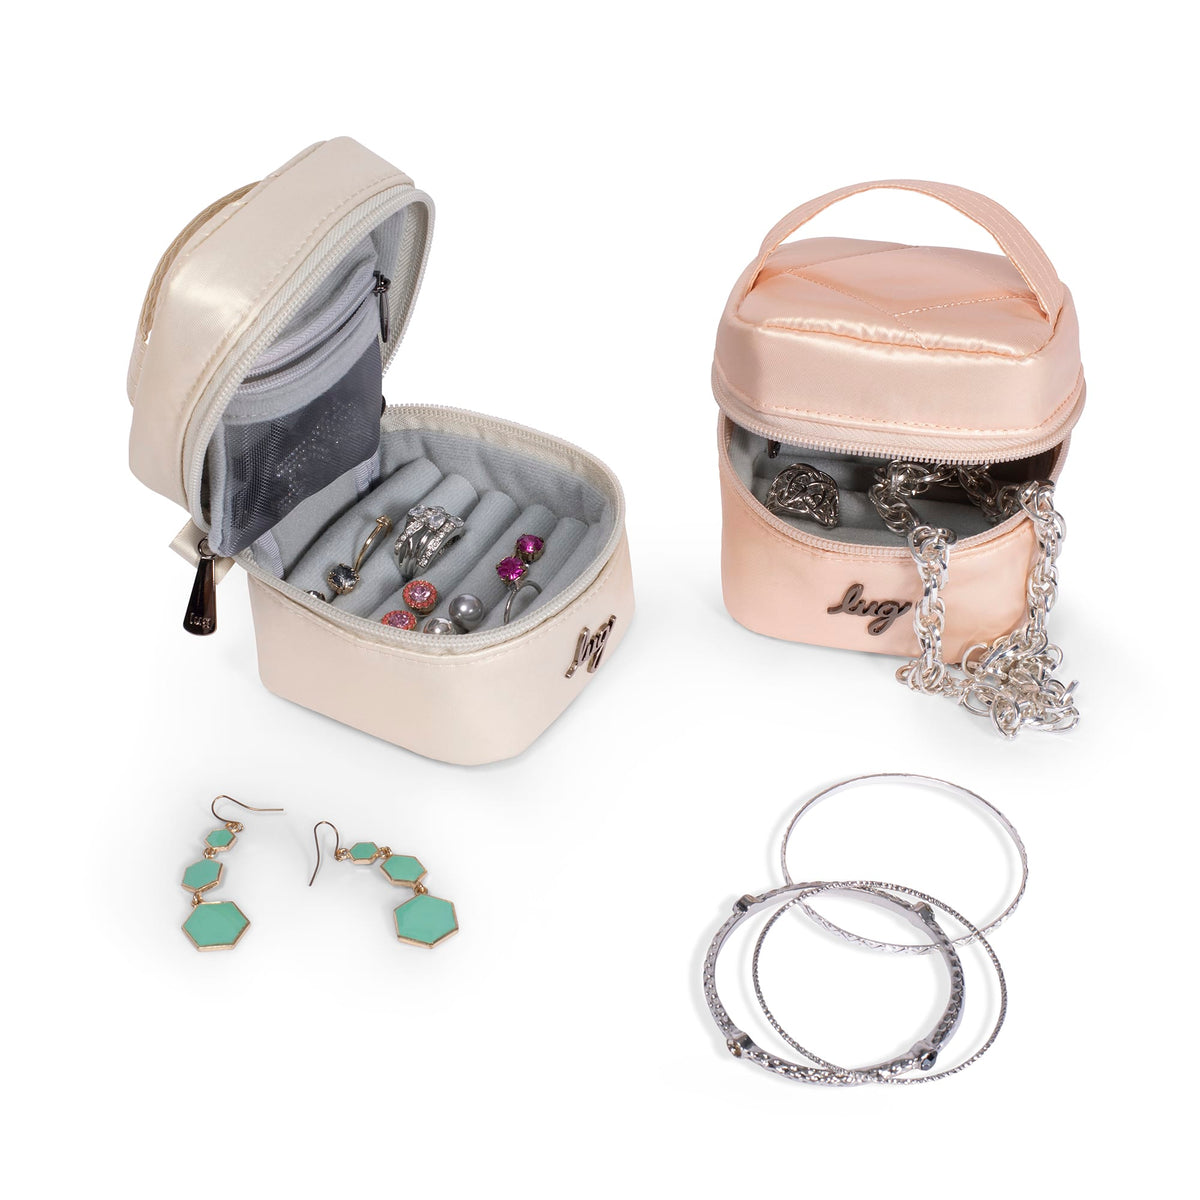 LOKASS Travel Jewelry Bag Jewelry Organizer Bags Portable Jewelry